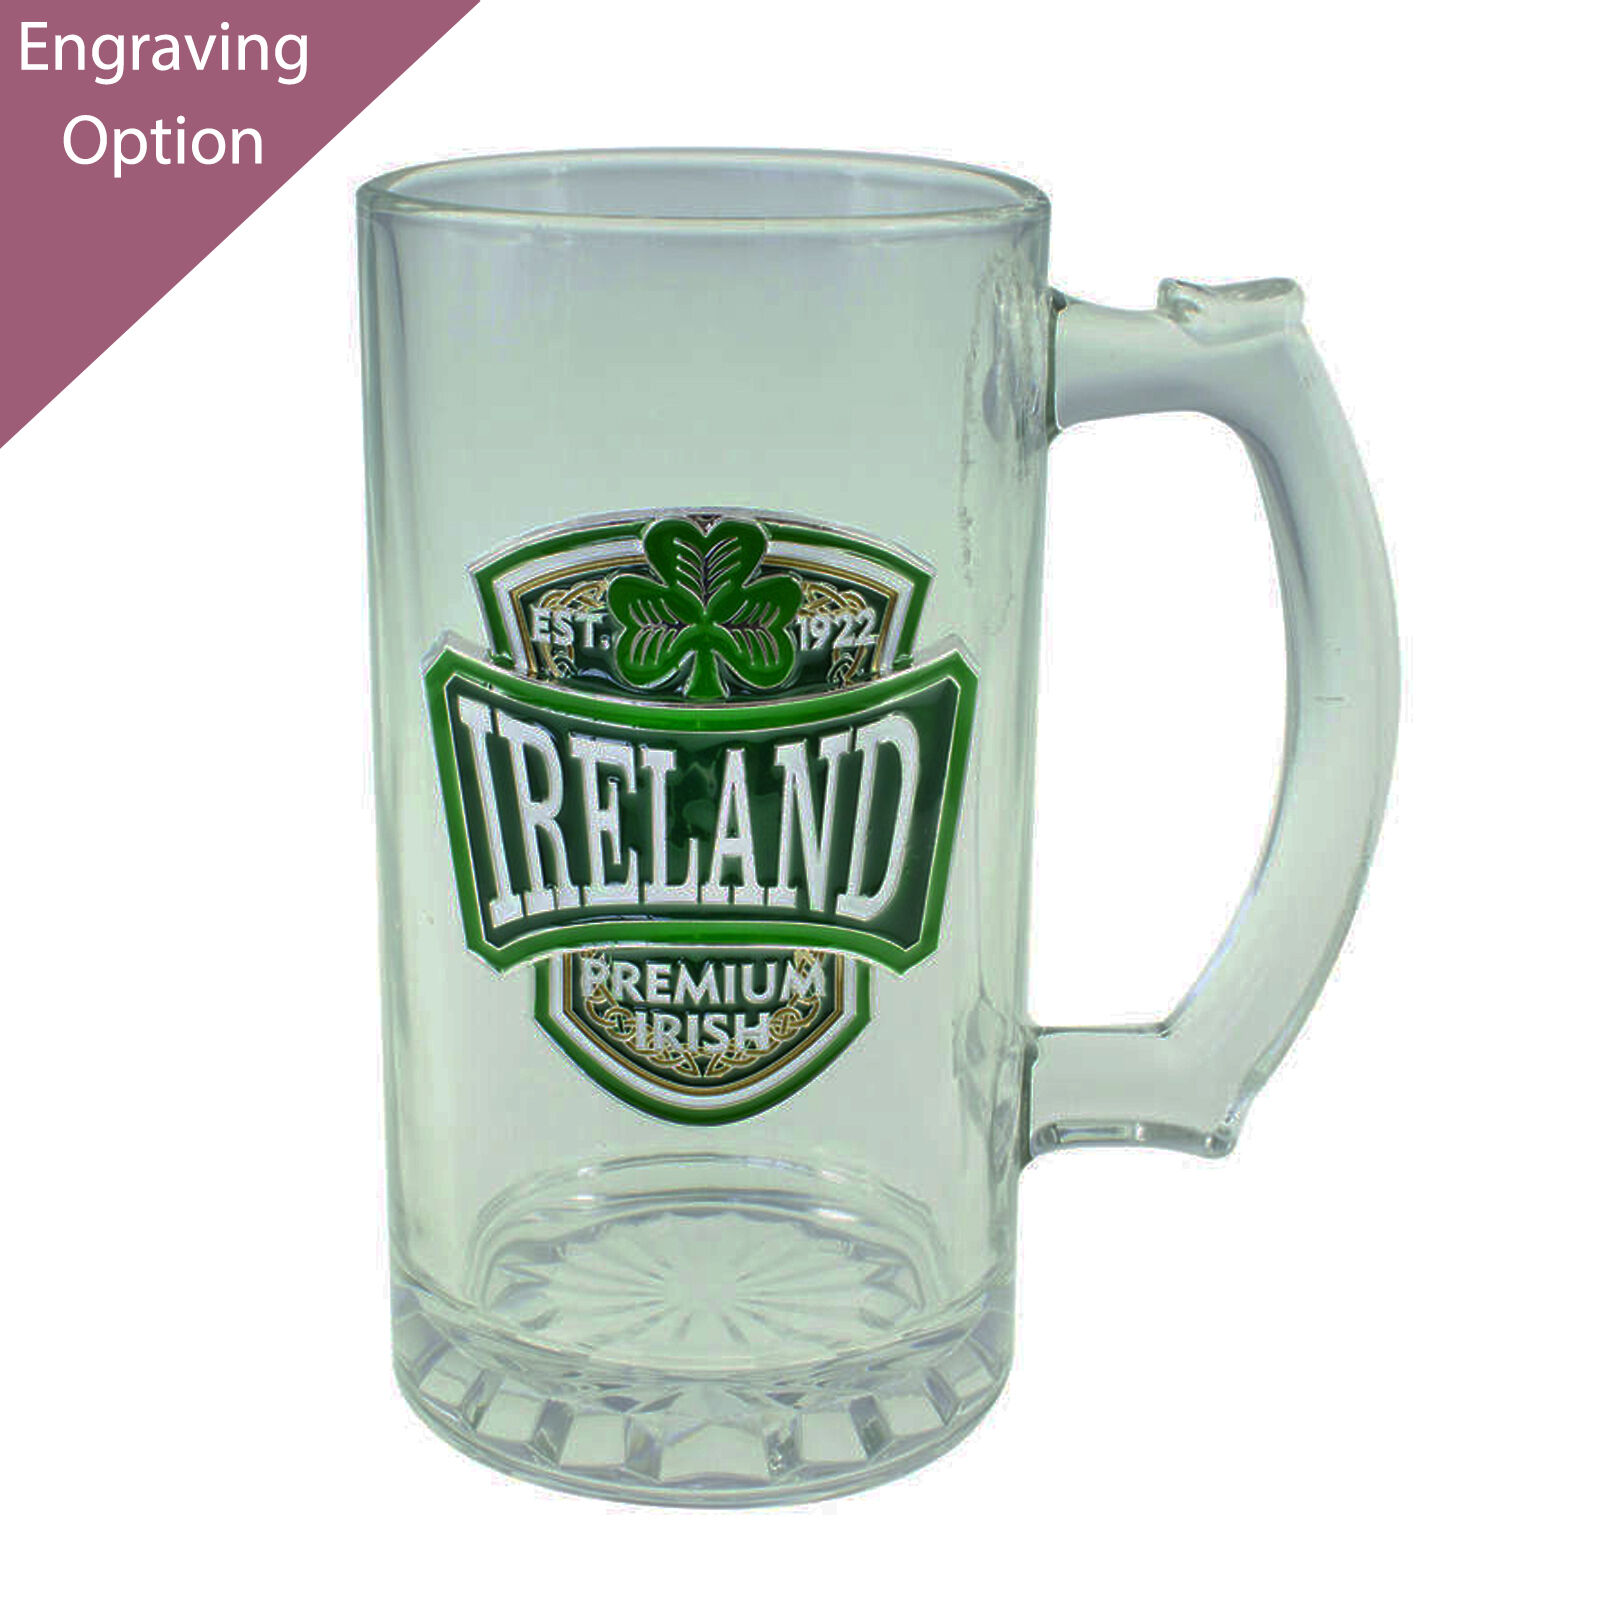 Glass: Guinness Logo Tankard, Green - Celtic Heritage